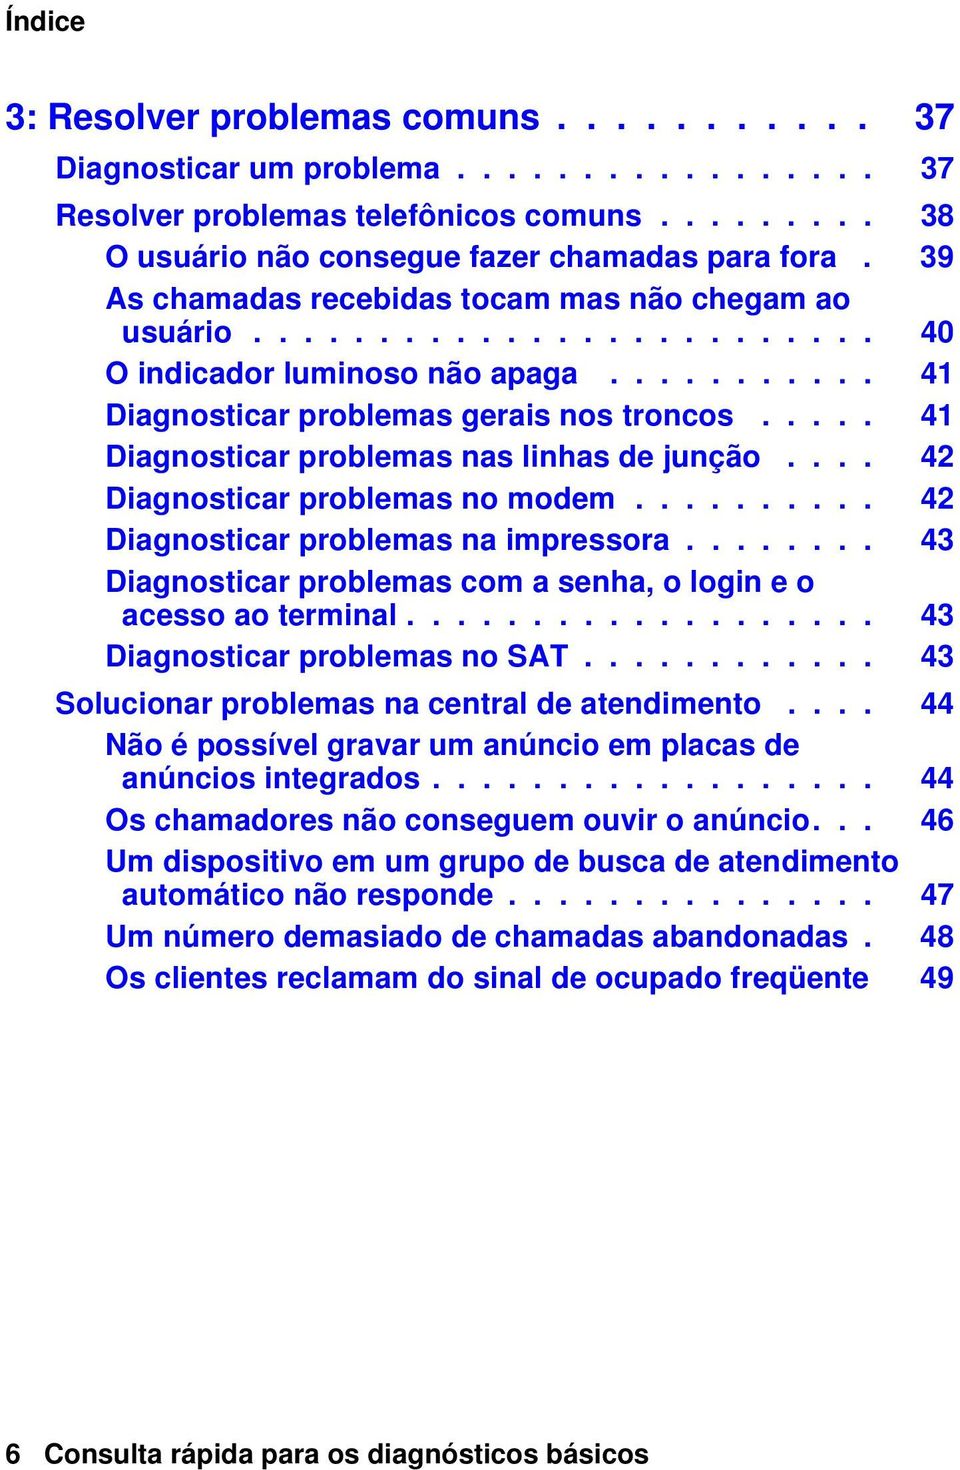 .... 41 Diagnosticar problemas nas linhas de junção.... 42 Diagnosticar problemas no modem.......... 42 Diagnosticar problemas na impressora.